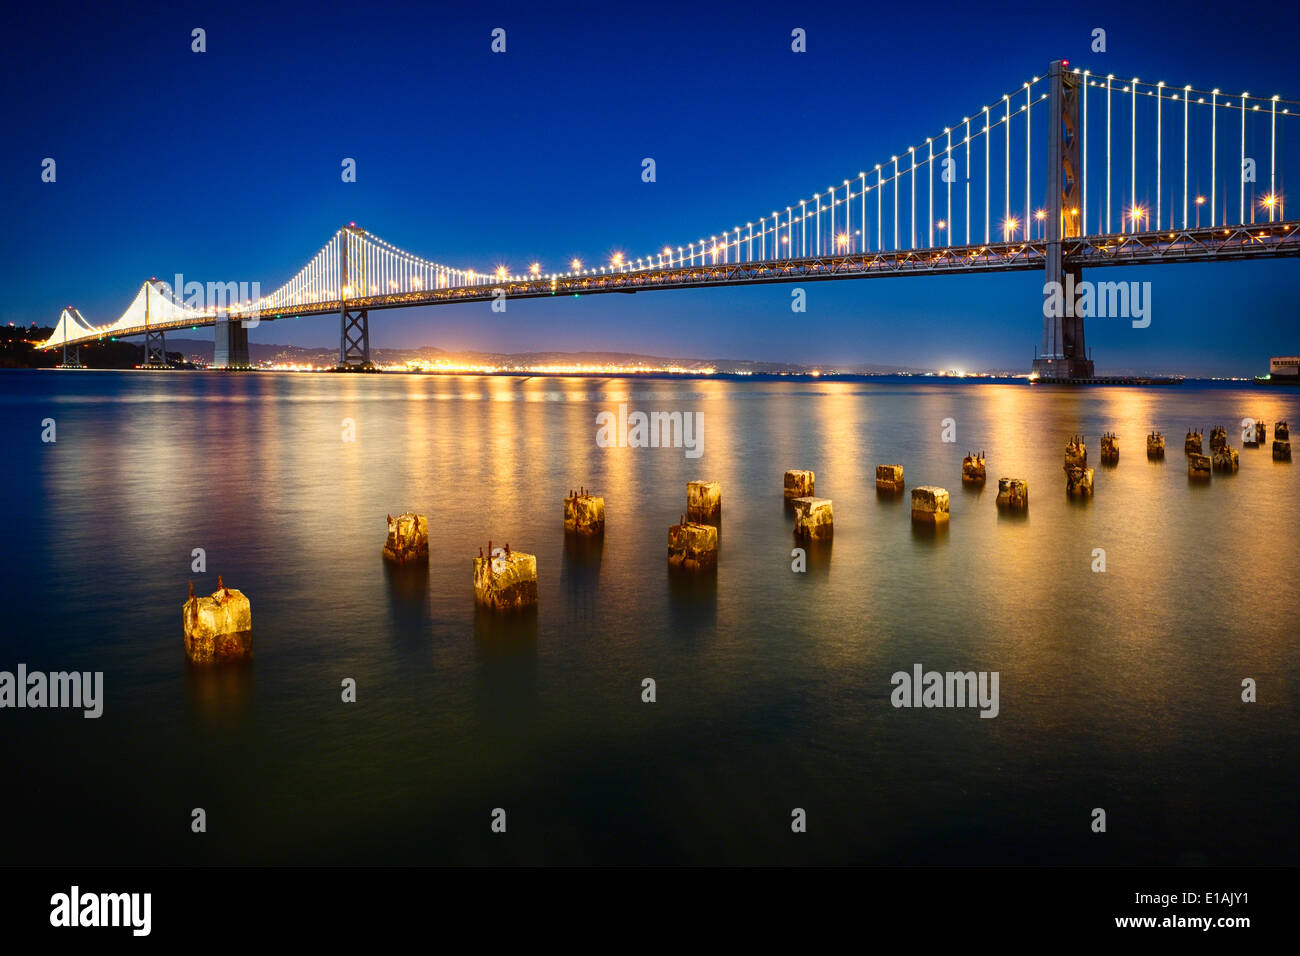 Vista notturna della sezione occidentale del San Francisco-Okland Bay Bridge di San Francisco, California, Stati Uniti d'America. Foto Stock